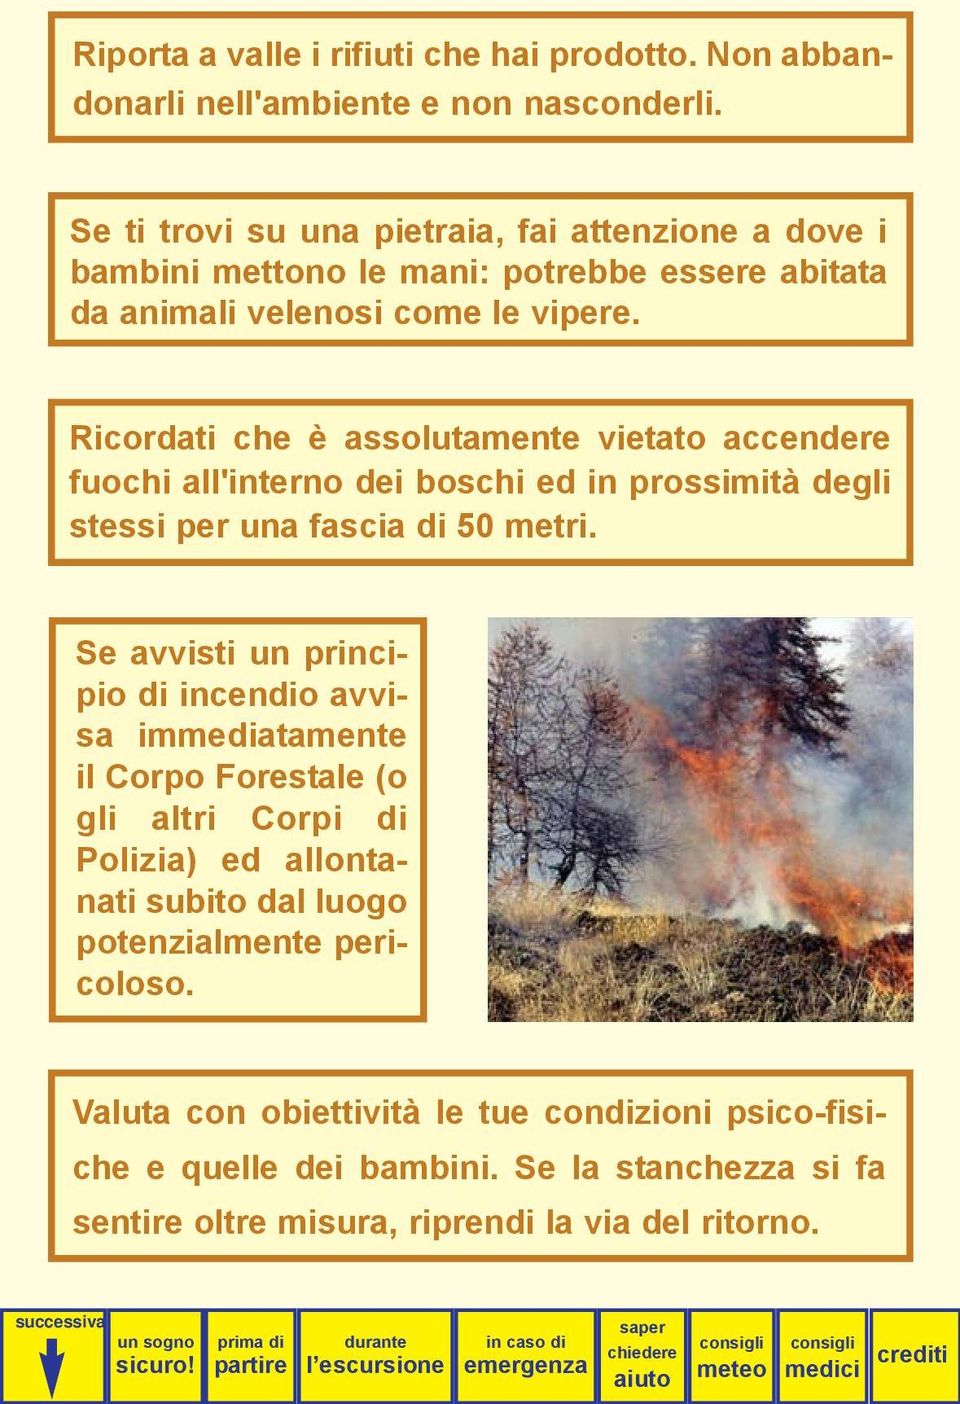 Ricordati che è assolutamente vietato accendere fuochi all'interno dei boschi ed in prossimità degli stessi per una fascia di 50 metri.